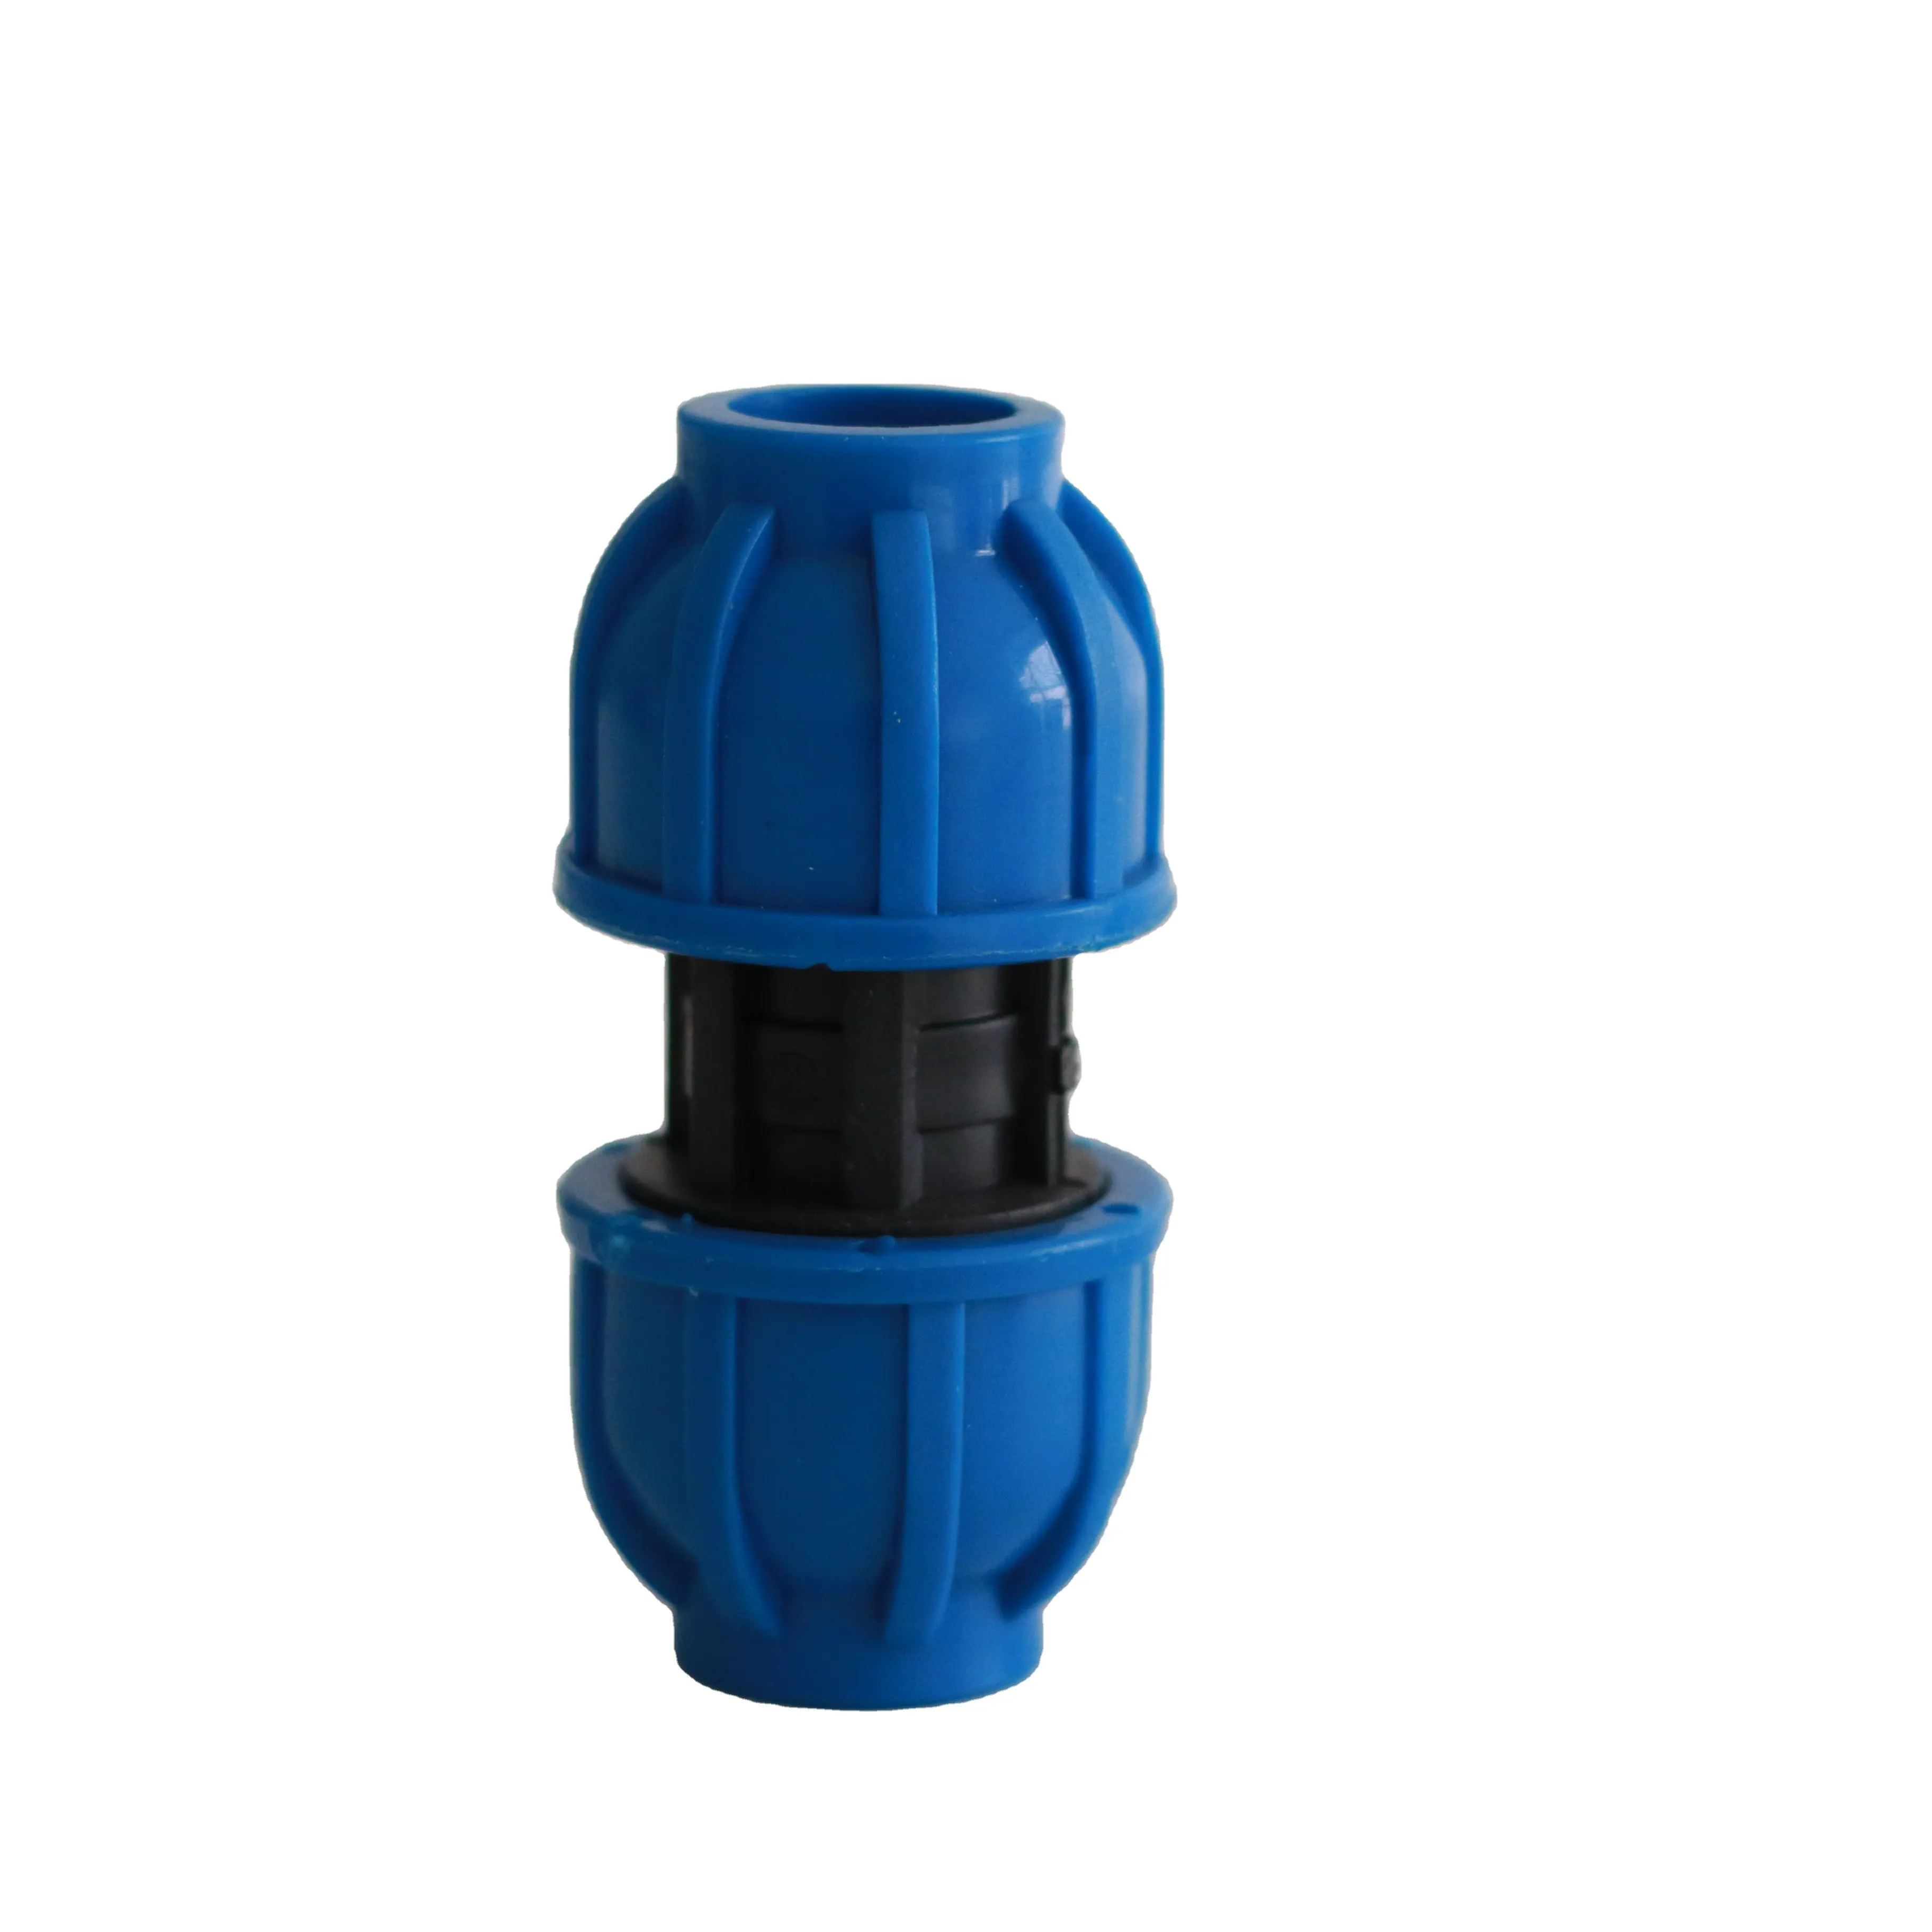 JY Kunststoff PE-Wasserrohr Schnellanschluss BLUE 25-20/32-25 mm Schnellanschluss PE-PVC-Rohrverbindung